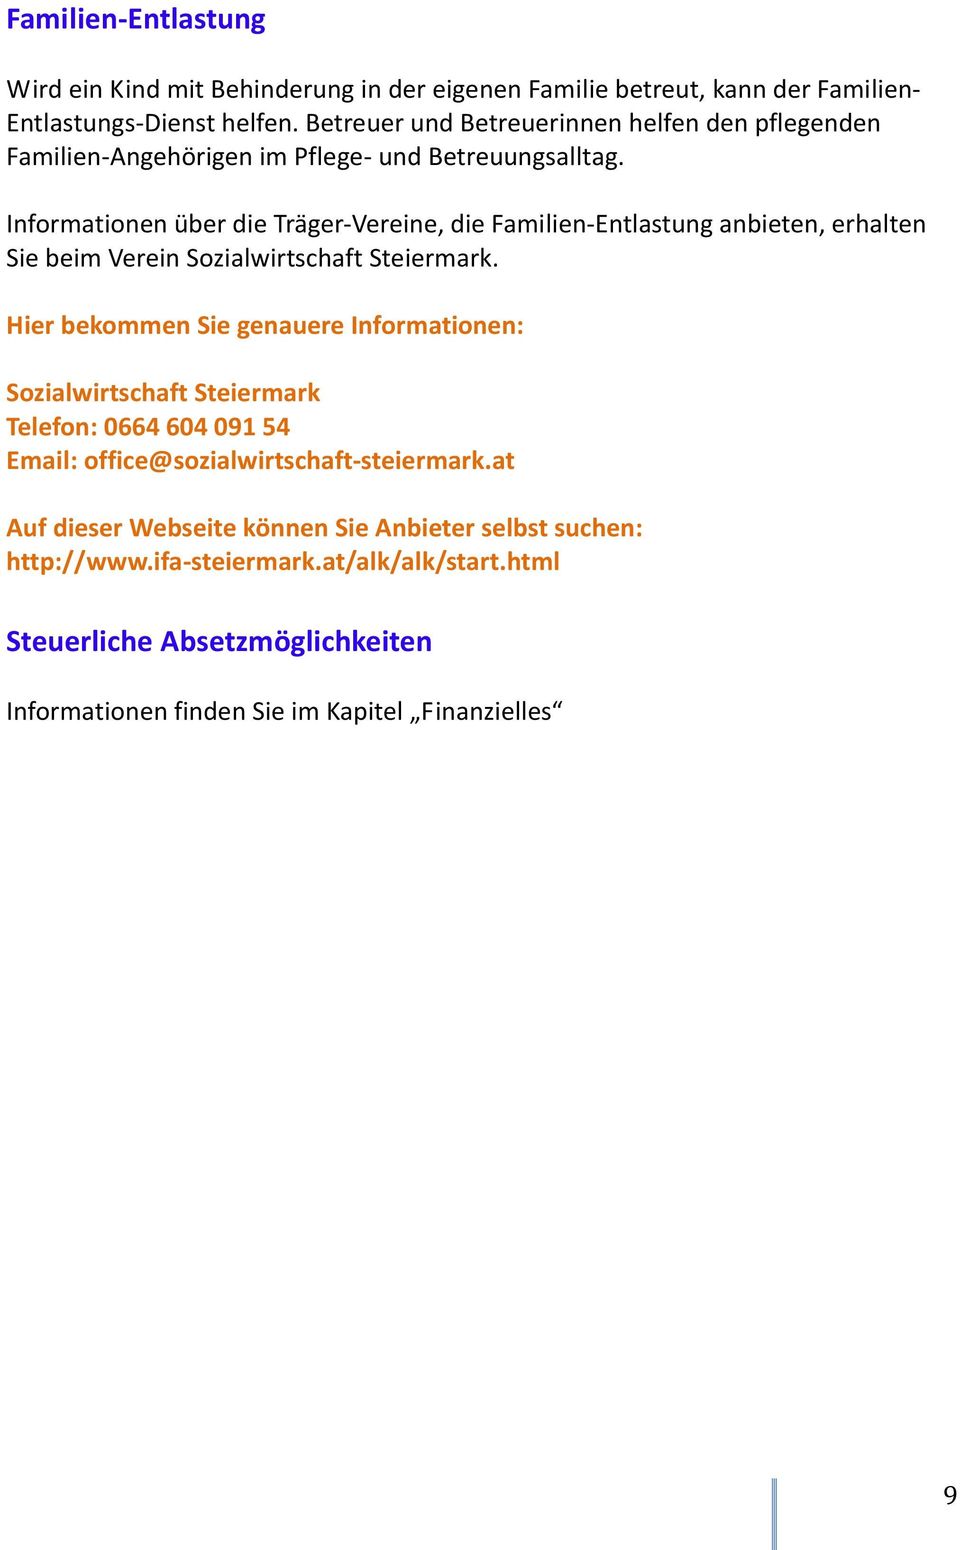 Informationen über die Träger-Vereine, die Familien-Entlastung anbieten, erhalten Sie beim Verein Sozialwirtschaft Steiermark.